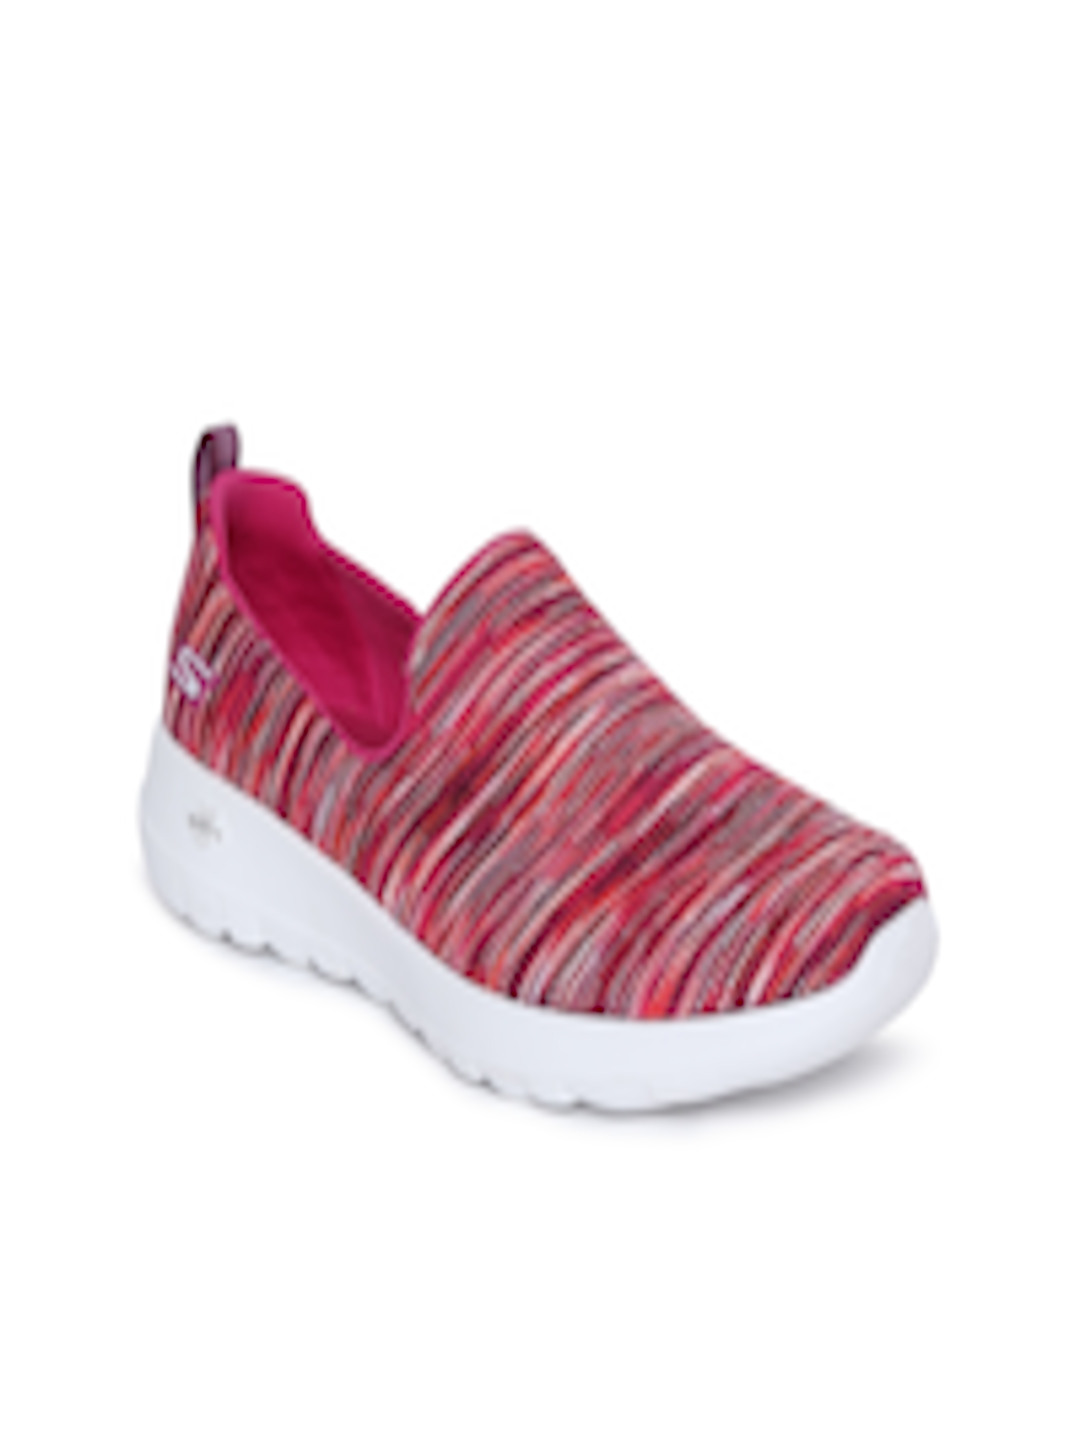 Buy Skechers Women Pink GO WALK JOY TERRIFIC Walking Shoes - Sports ...